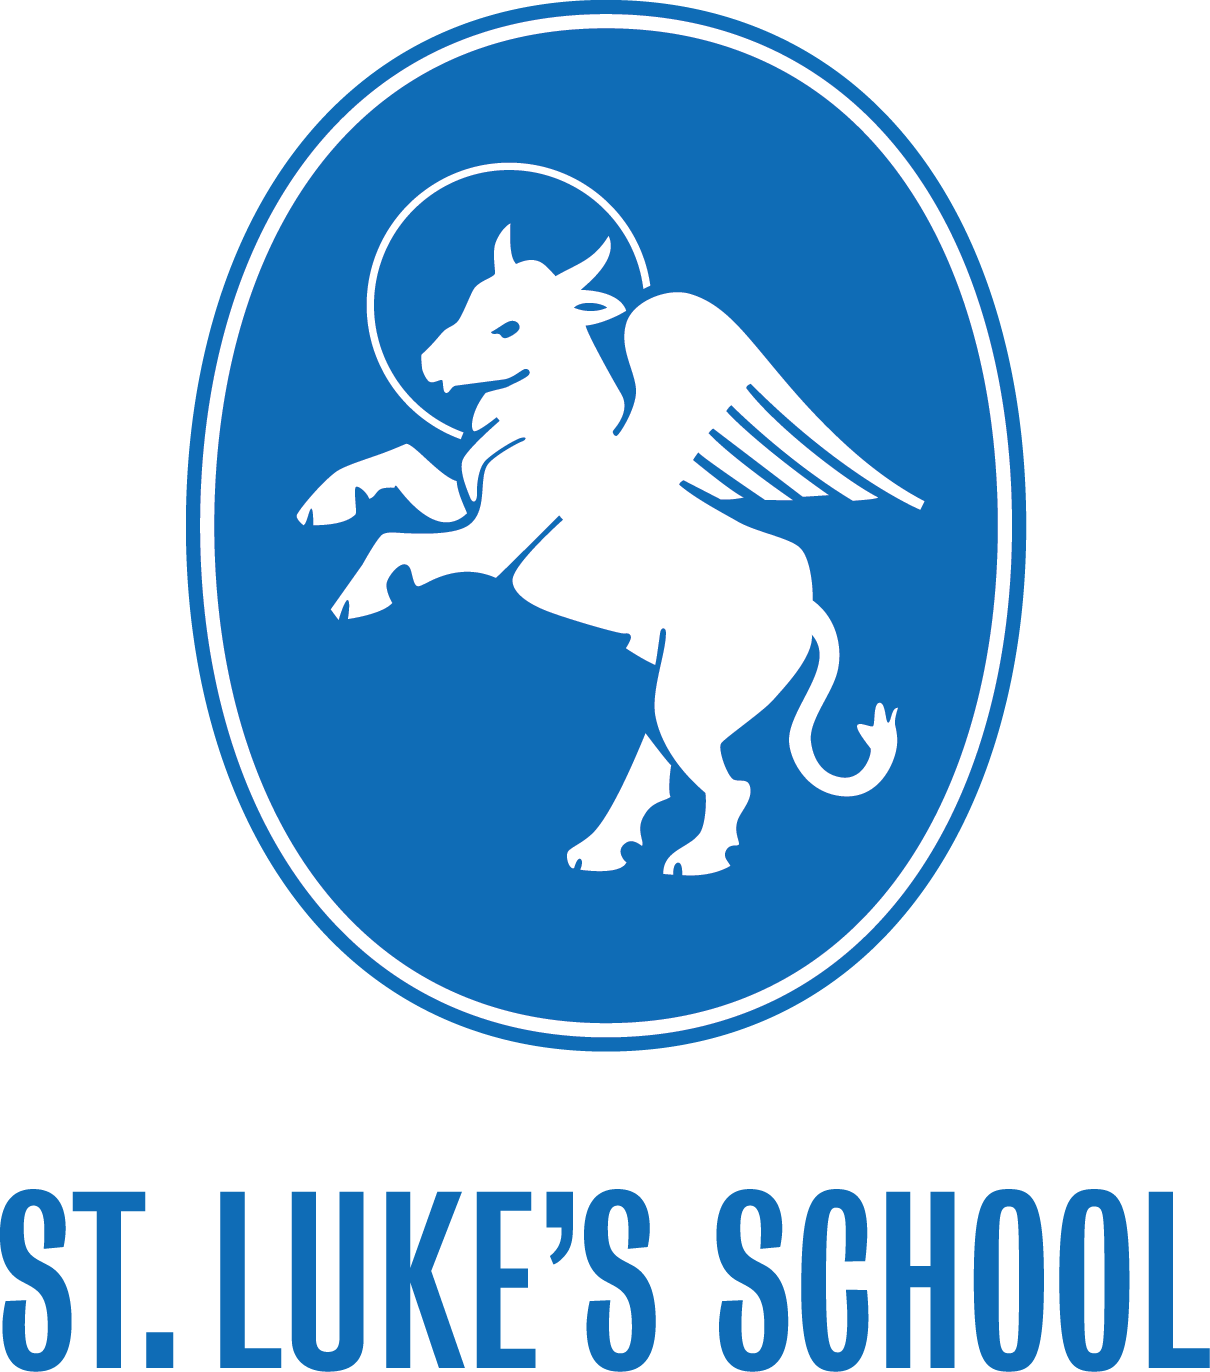  St. Luke's School Food Services